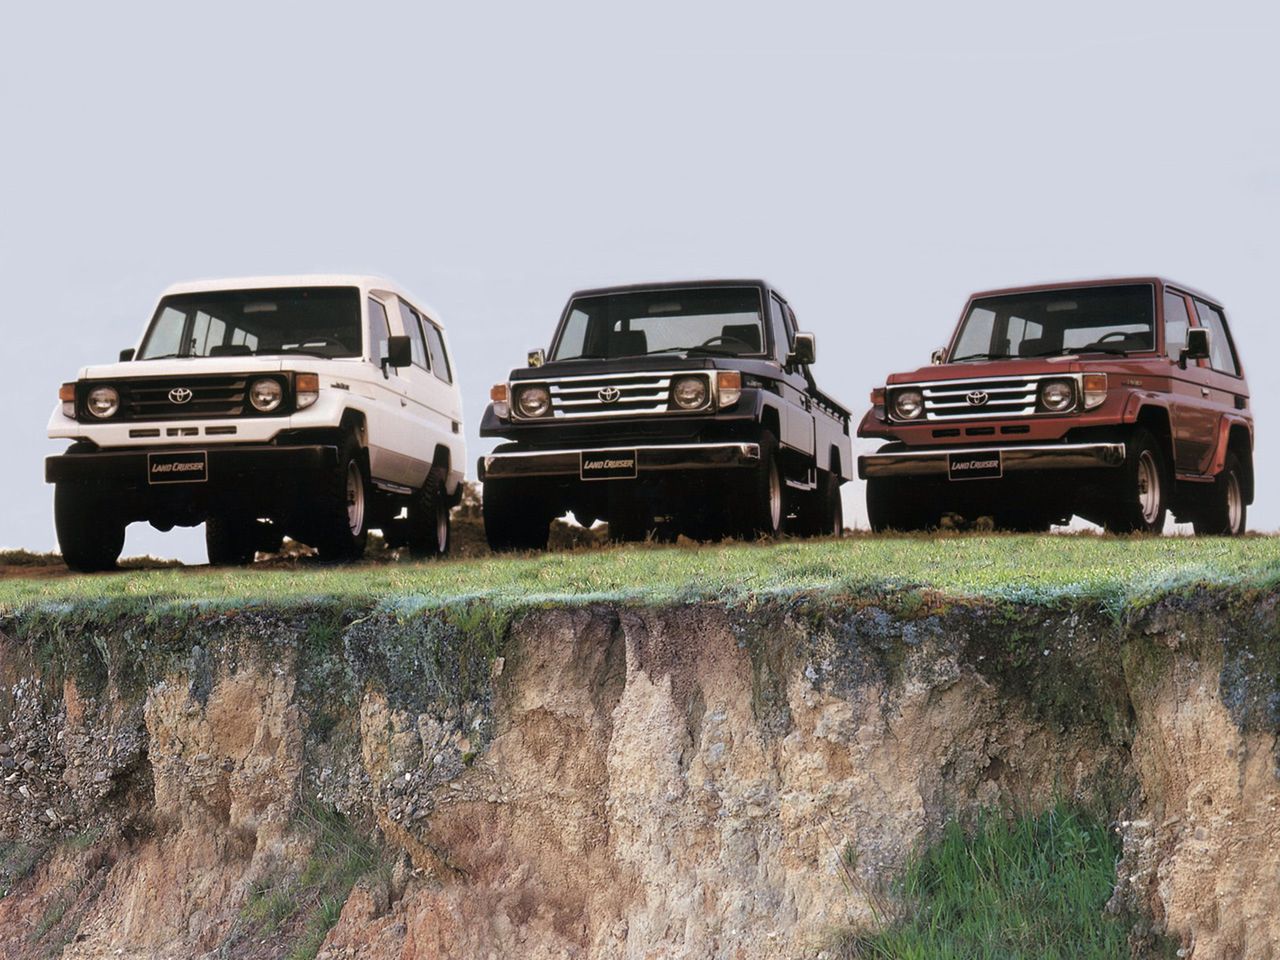 Trzeba zacząć od tego, że nie Toyota Land Cruiser J5 jest następcą J4, ale seria J7. Tak naprawdę J5 to już oddzielna linia modelowa znana jako Station Wagon, a z dzisiejszego punktu widzenia J5 i J6 to prekursorzy dzisiejszej serii 200. Do takiego podziału doszło już w roku 1967, kiedy seria J4 była dopiero na początku swojej kariery. Natomiast w 1984 roku pojawił się prawdziwy następca serii J4, czyli J7, choć produkcja J4 trwała do 1986 roku. Problem w tym, że to nie koniec komplikacji. J7 podzielono na dwie odrębne serie, którą nazwano umownie Light Duty i Heavy Duty, czyli lekką i ciężką. Było to konieczne, ponieważ rynek musiał być nasycony Land Crusierami. Model J7 służył do tego, by wypełnić rynek terenówek wszystkim co jest potrzebne. Dla jednych J4 było zbyt toporne, dla innych zbyt delikatne. Stąd podział na dwie rodziny - lekką i ciężką - by nie tworzyć rozwiązań kompromisowych. Swoją drogą w tym samym czasie podobny ruch wykonał Nissan z Patrolem GR i 160, ale wygląda to nieco inaczej.